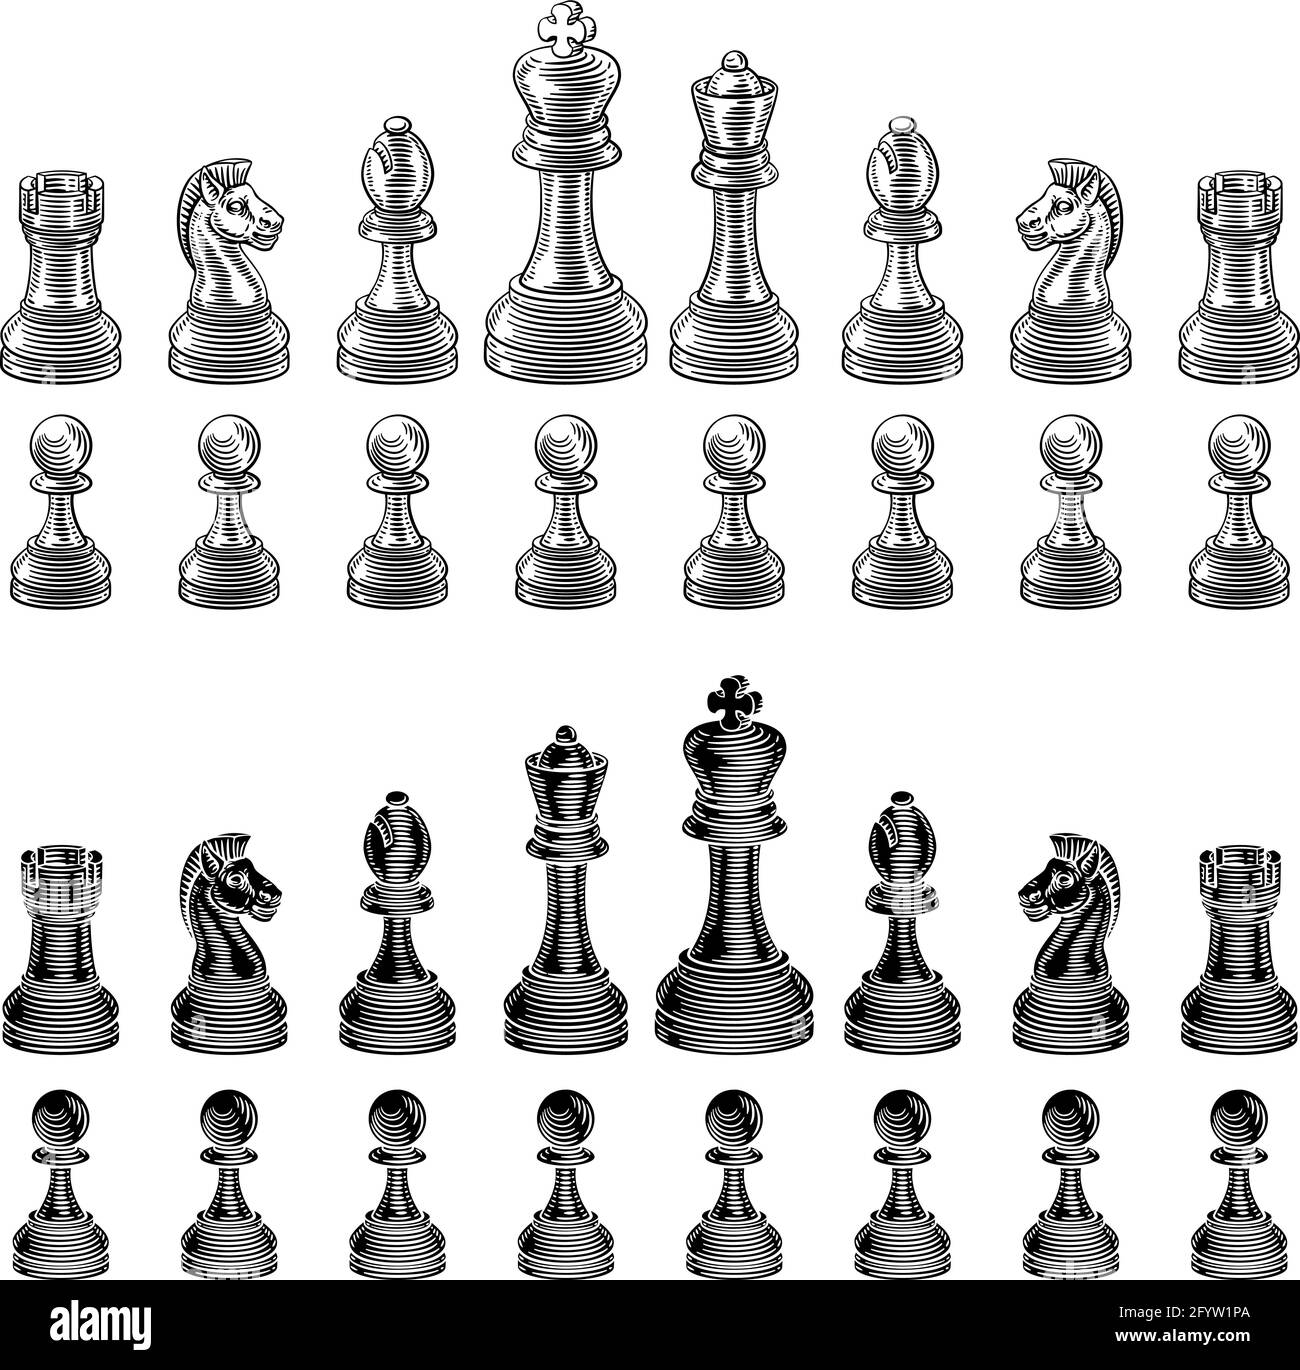 Jeu de pièces d'échecs style Woodgcut vintage Illustration de Vecteur